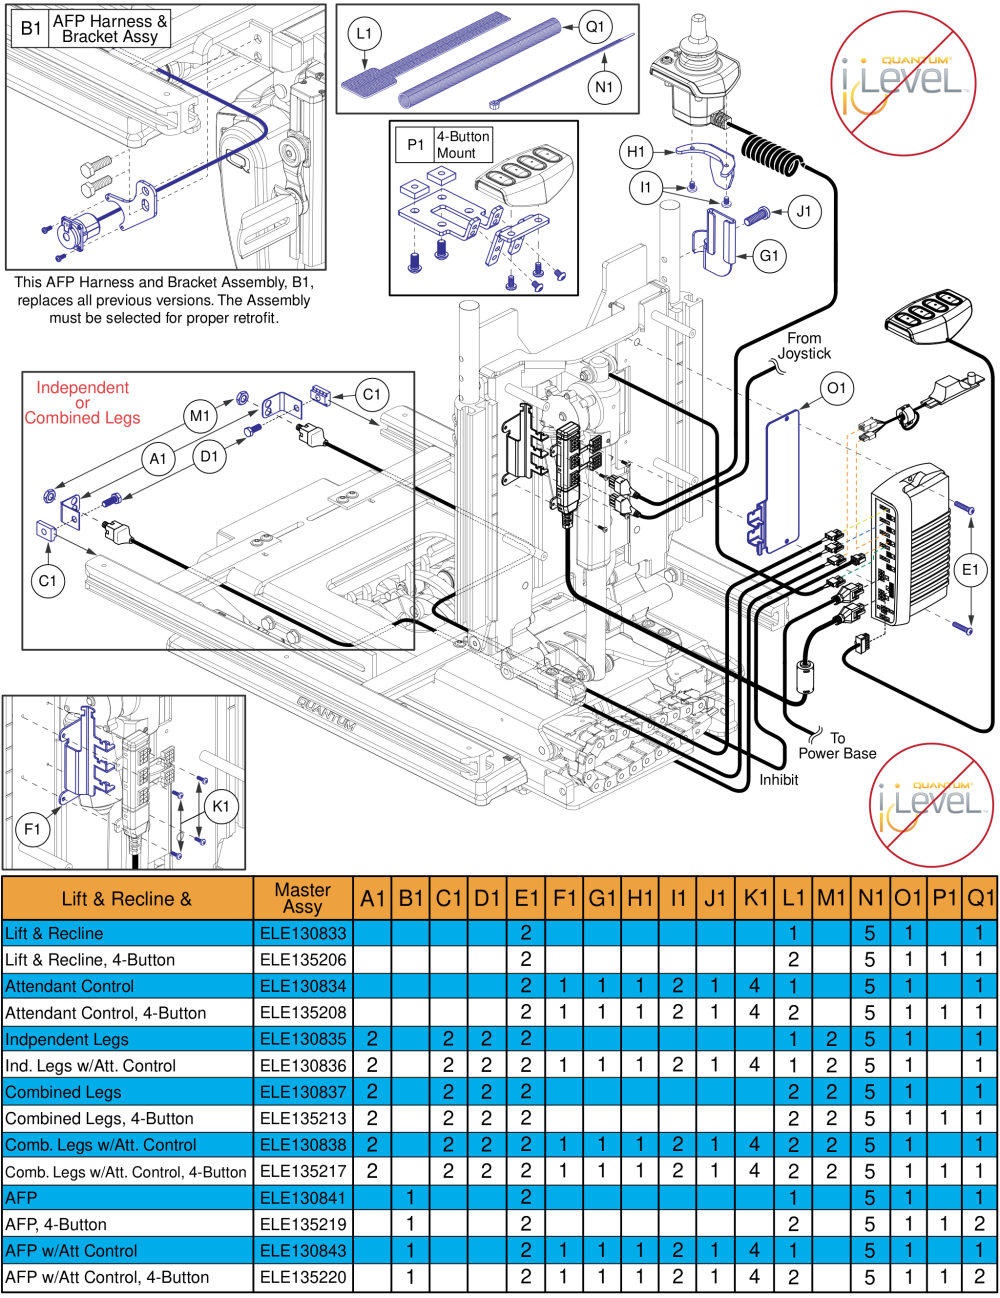 Lift & Recline Hardware, Q-logic 2 - Reac Lift / Non I-level parts diagram